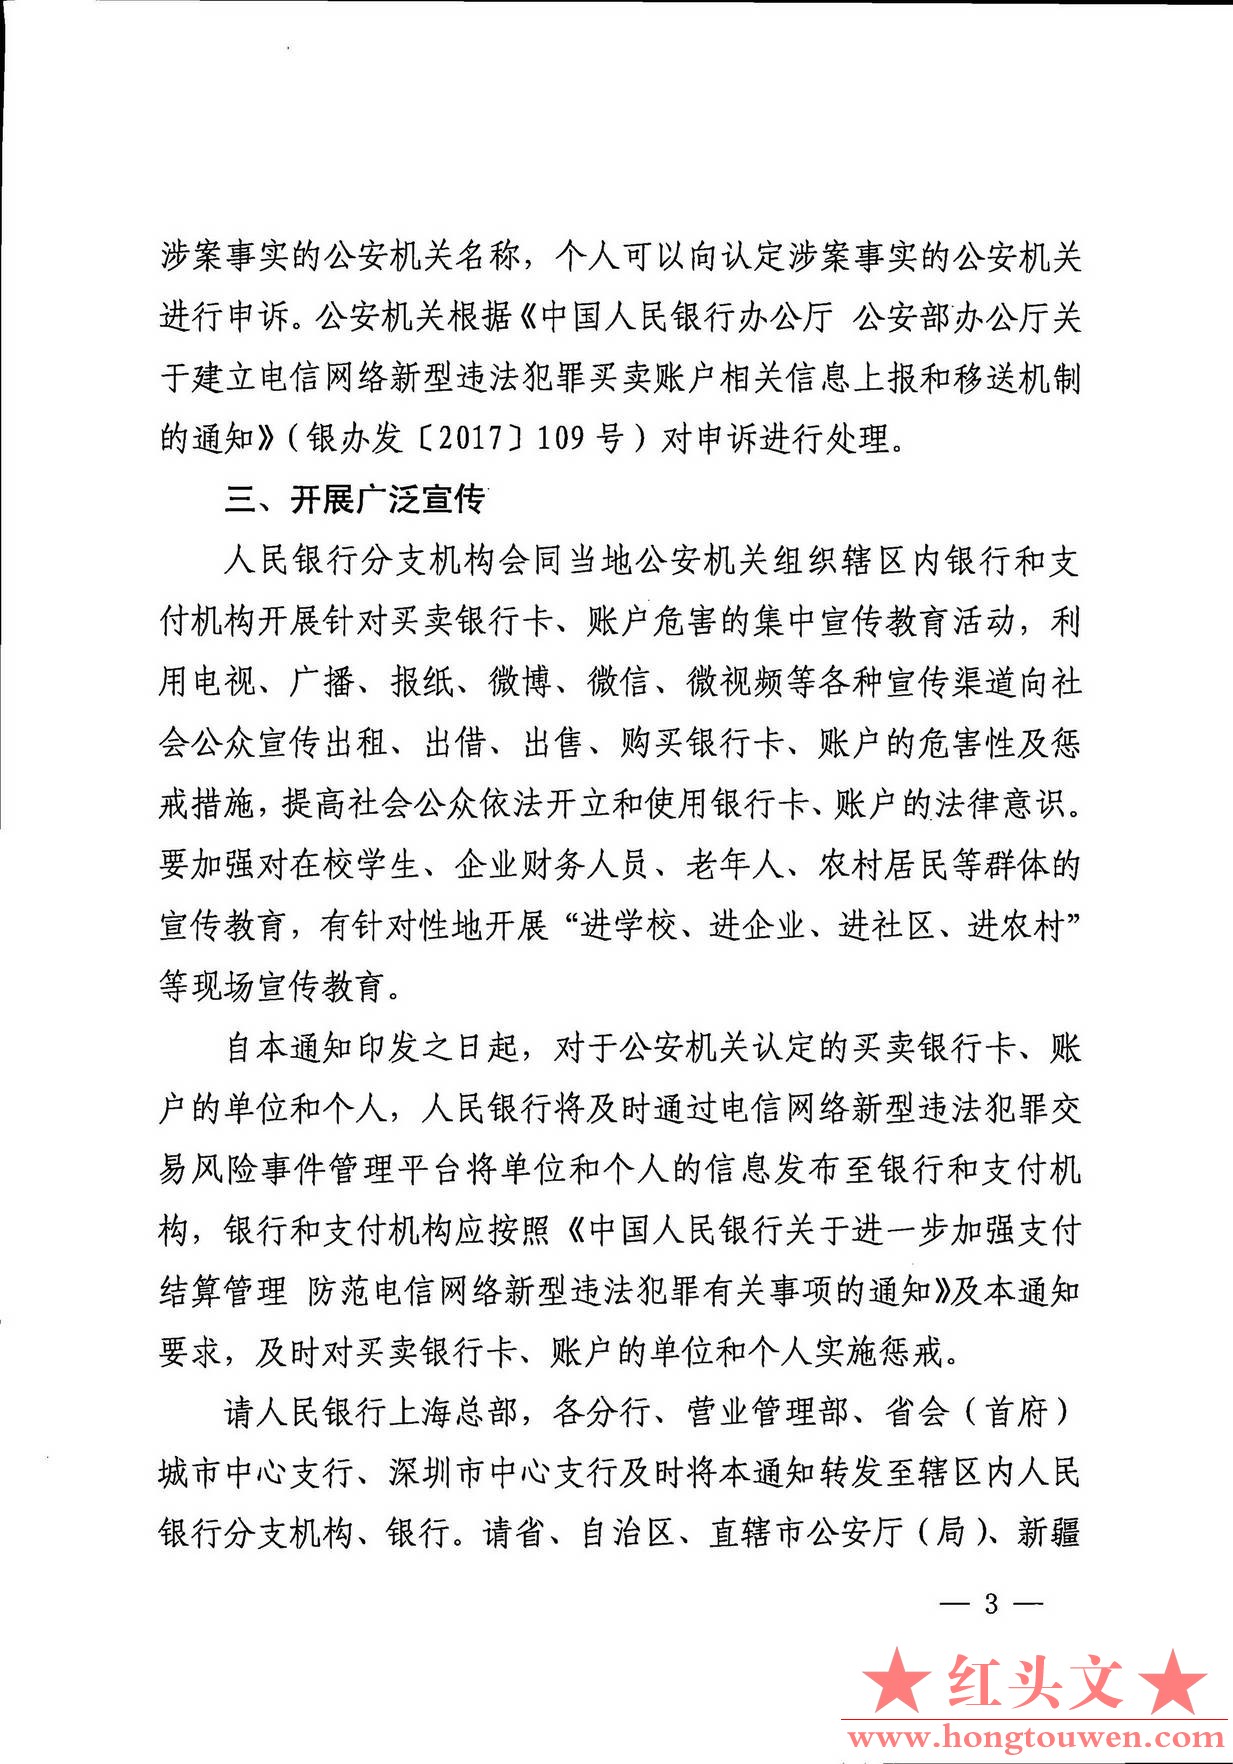 银发[2019]304号-中国人民银行 公安部对买卖银行卡或账户的个人实施惩戒的通知_页面_3.jpg